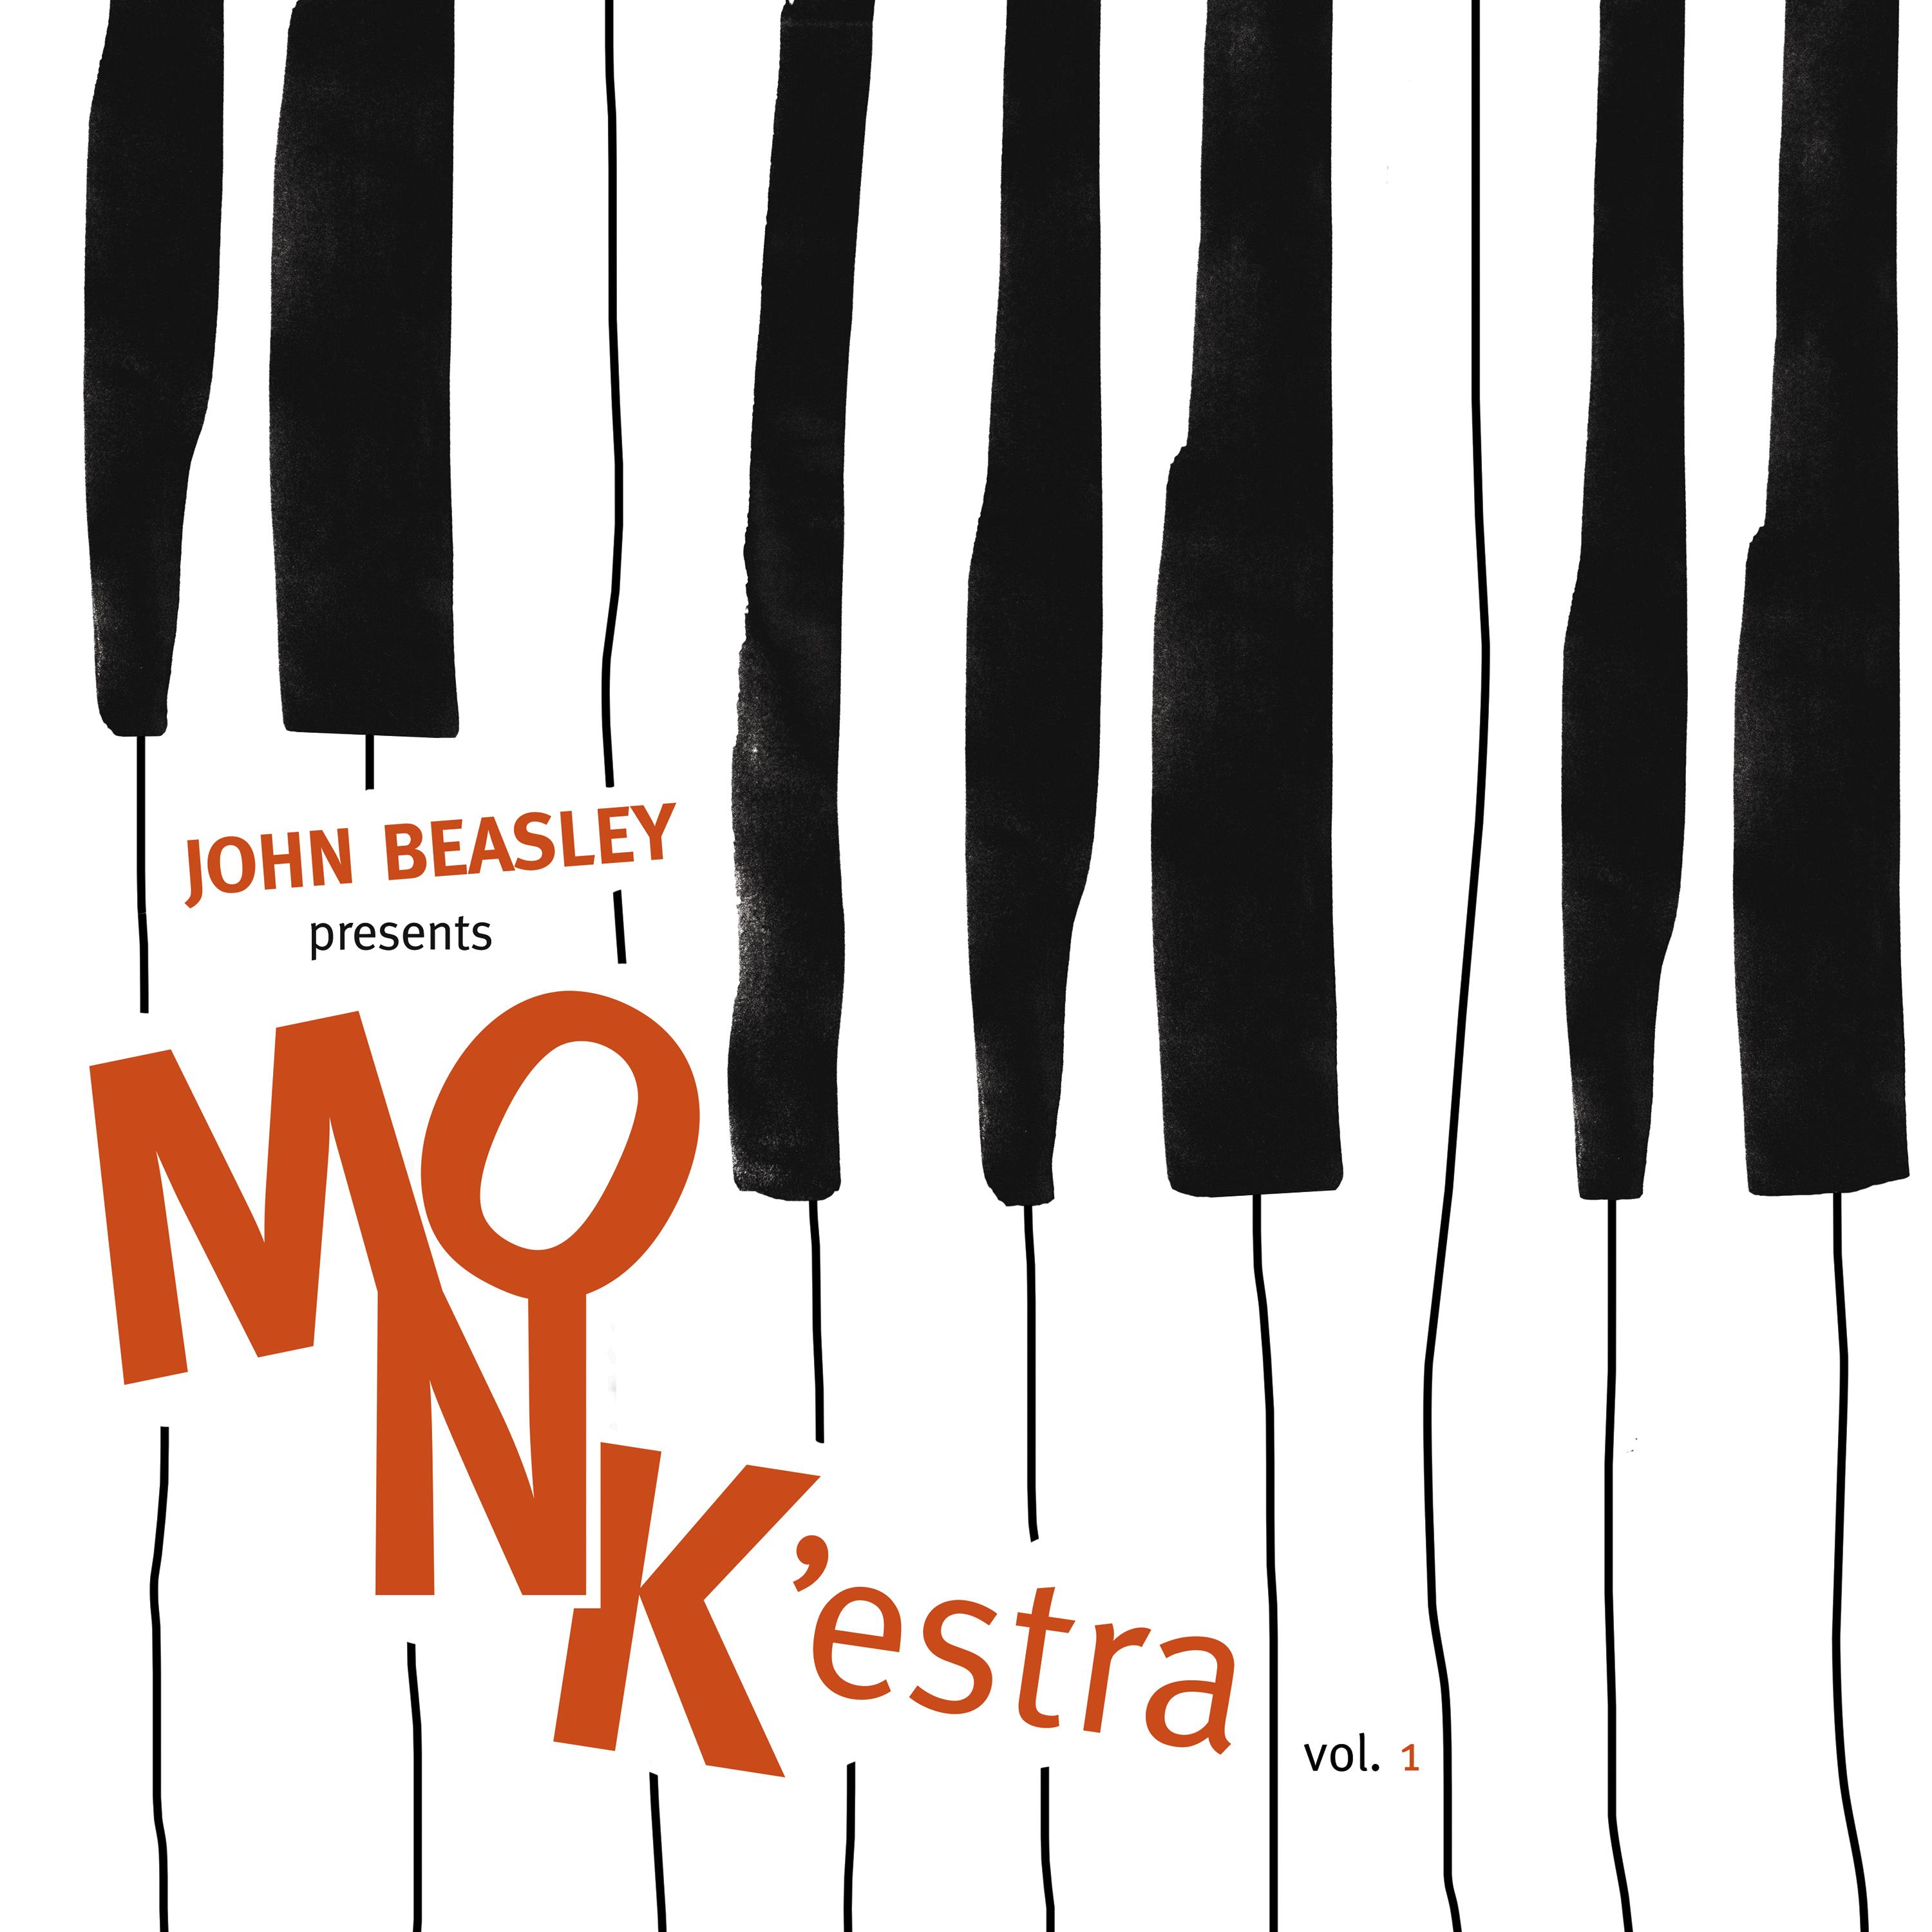 John Beasley – MONK’estra, Vol. 1 (2016) [HDTracks FLAC 24bit/96kHz]